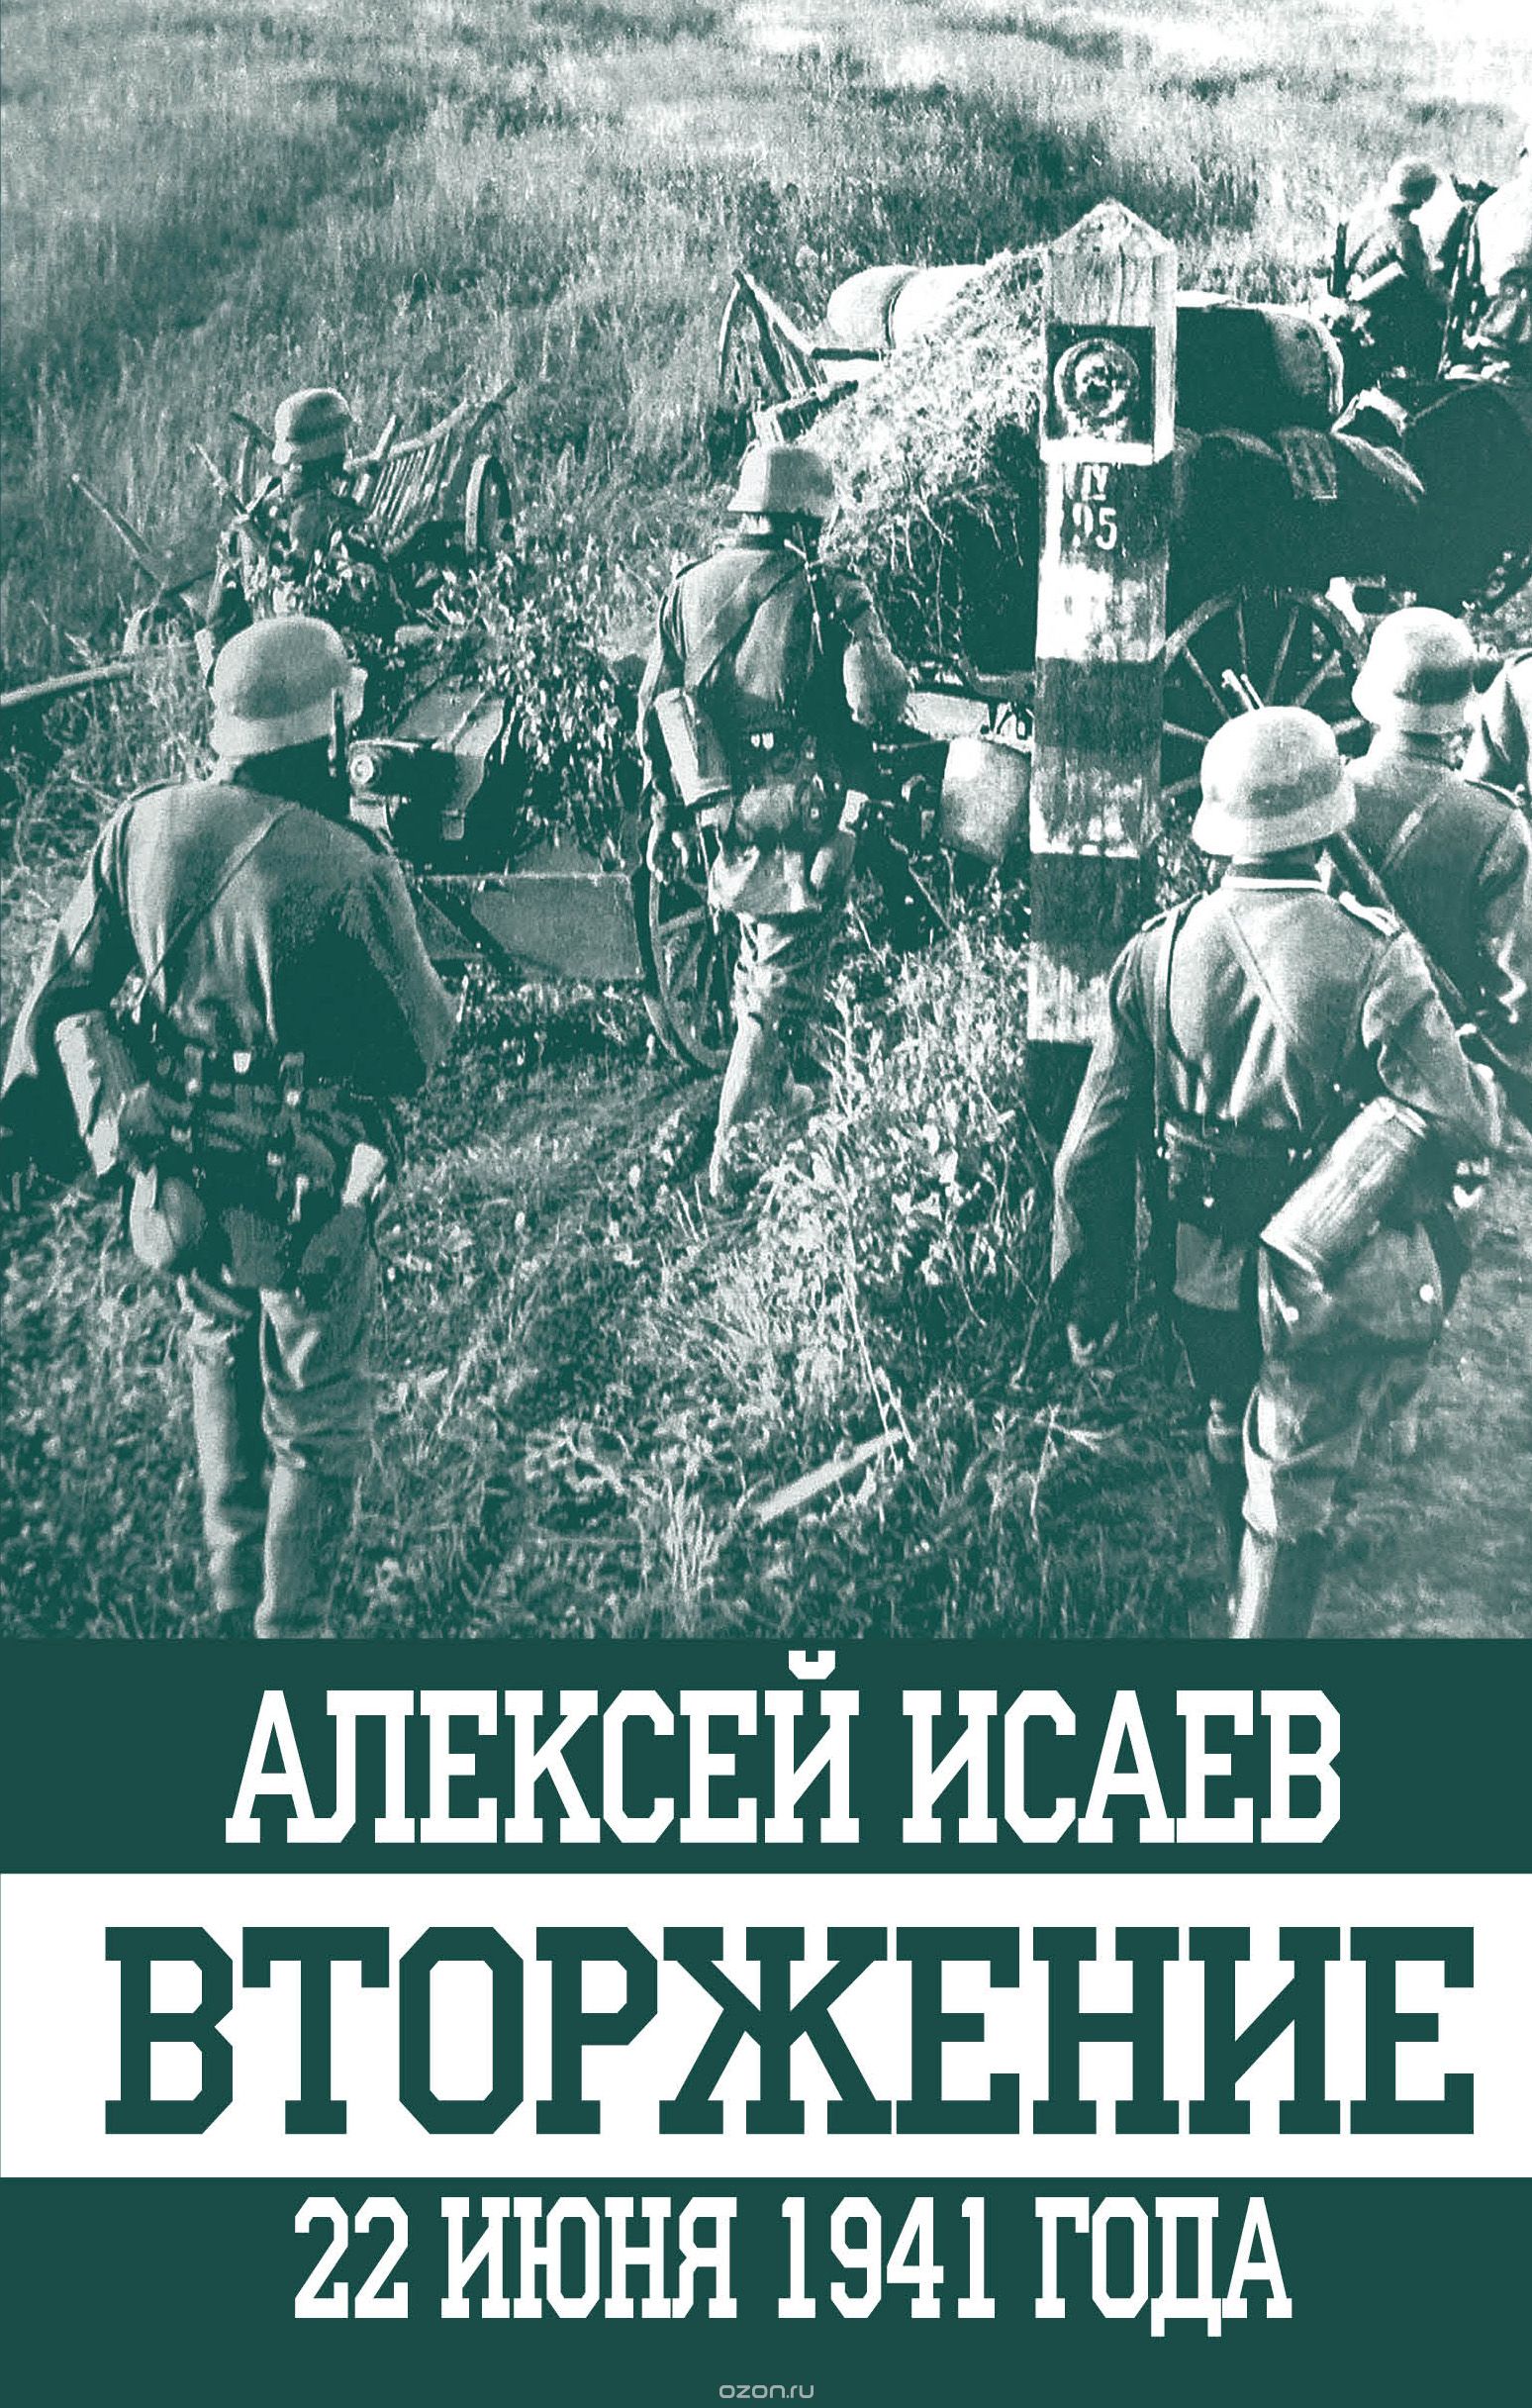 Скачать книгу "Вторжение. 22 июня 1941 года, Исаев Алексей Валерьевич"